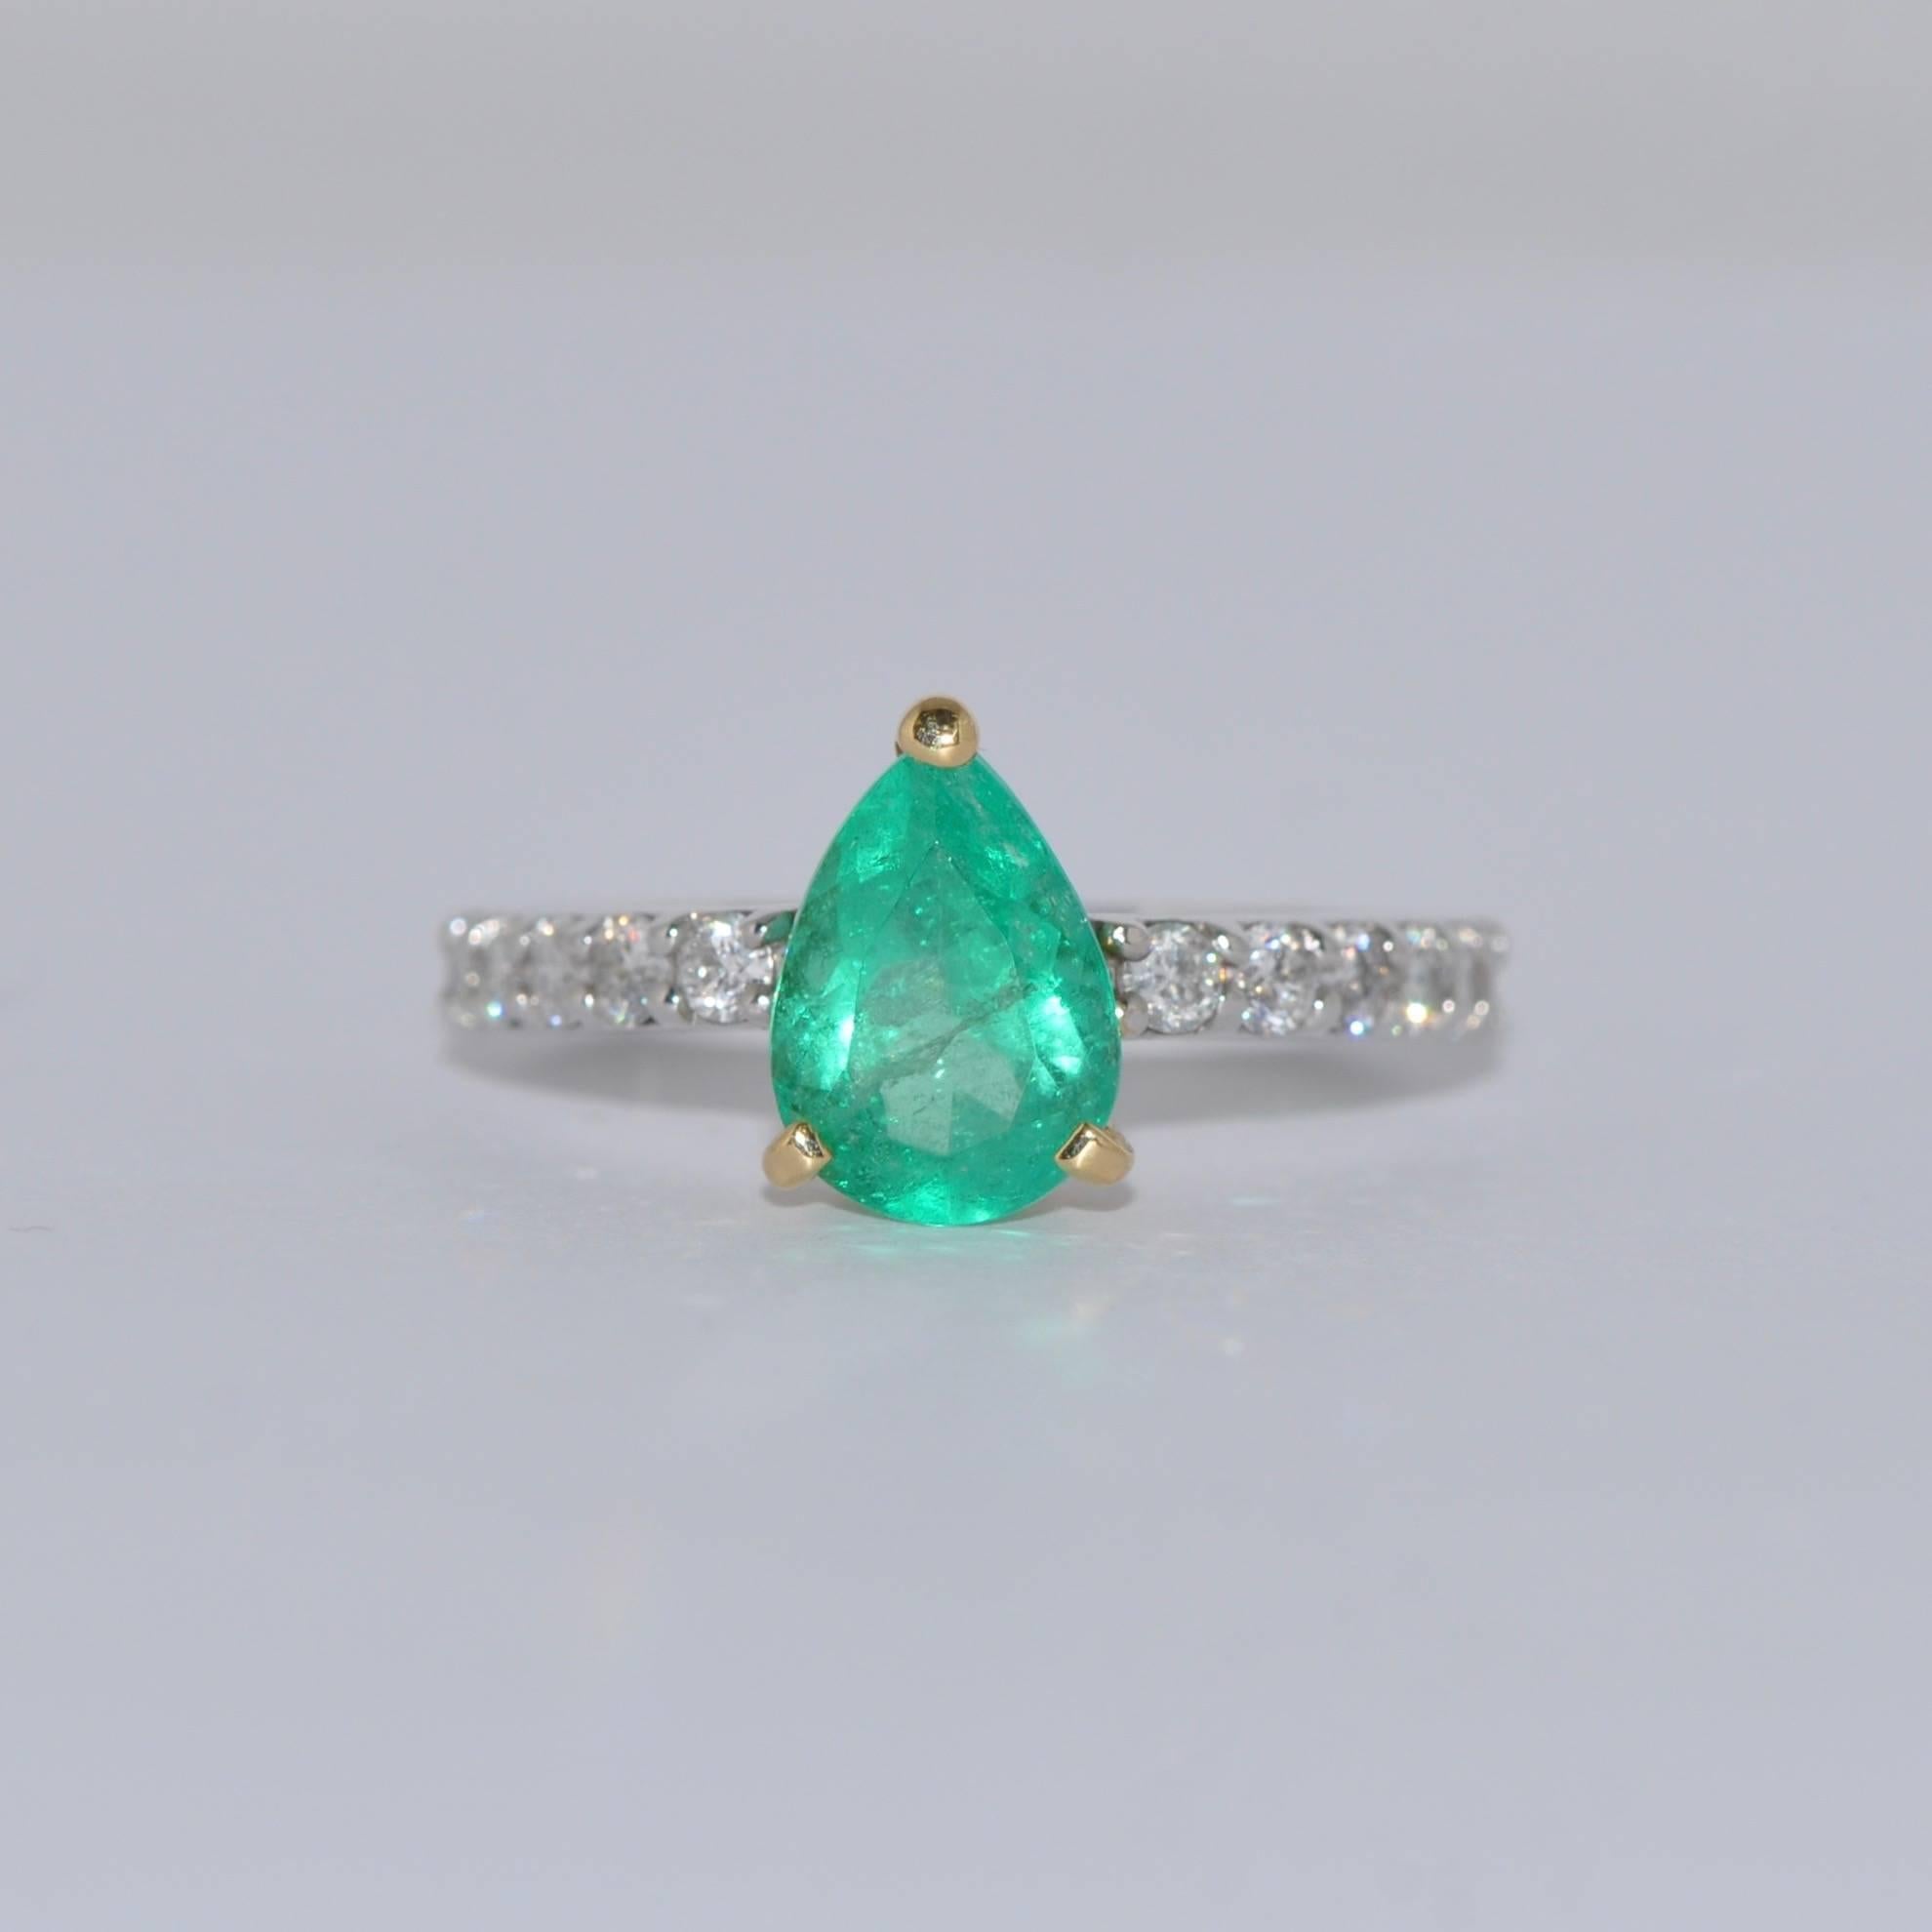 Der hier vorgestellte Ring ist mit einem prächtigen Smaragd von 1,41 Karat verziert, der mit einer Perfektion geschliffen ist, die ihn auszeichnet. Seine Birnenform verleiht ihm eine einzigartige Anziehungskraft, während sein schillernder Glanz ein